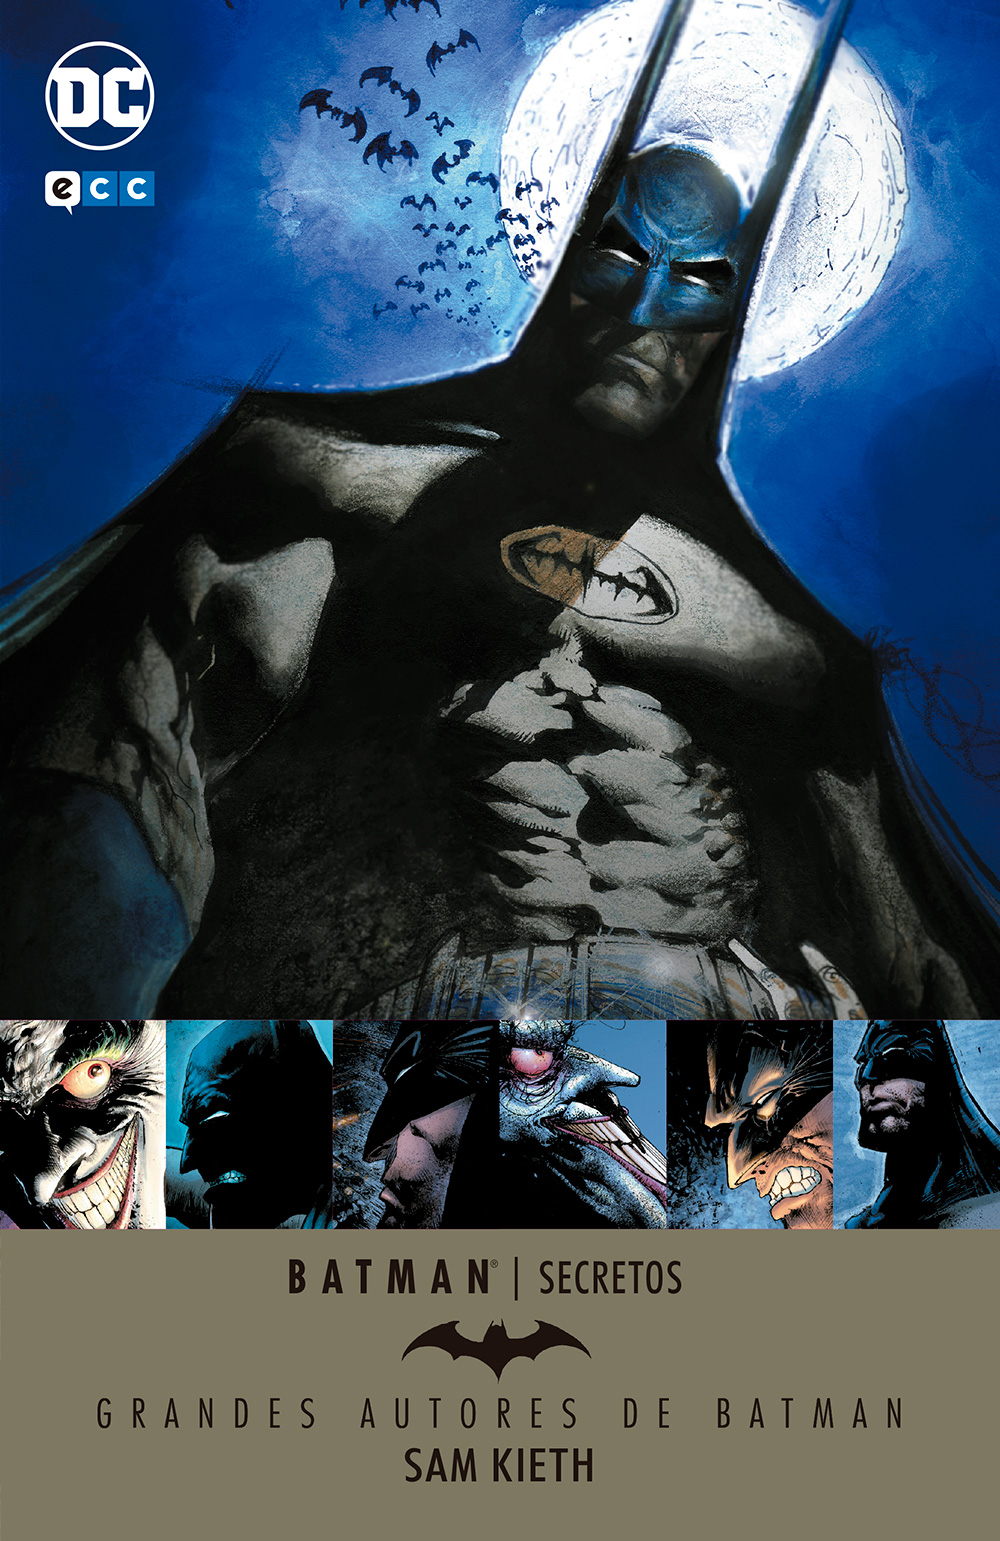 Grandes autores de Batman: Sam Kieth - Secretos | Funko Universe, Planet of  comics, games and collecting.